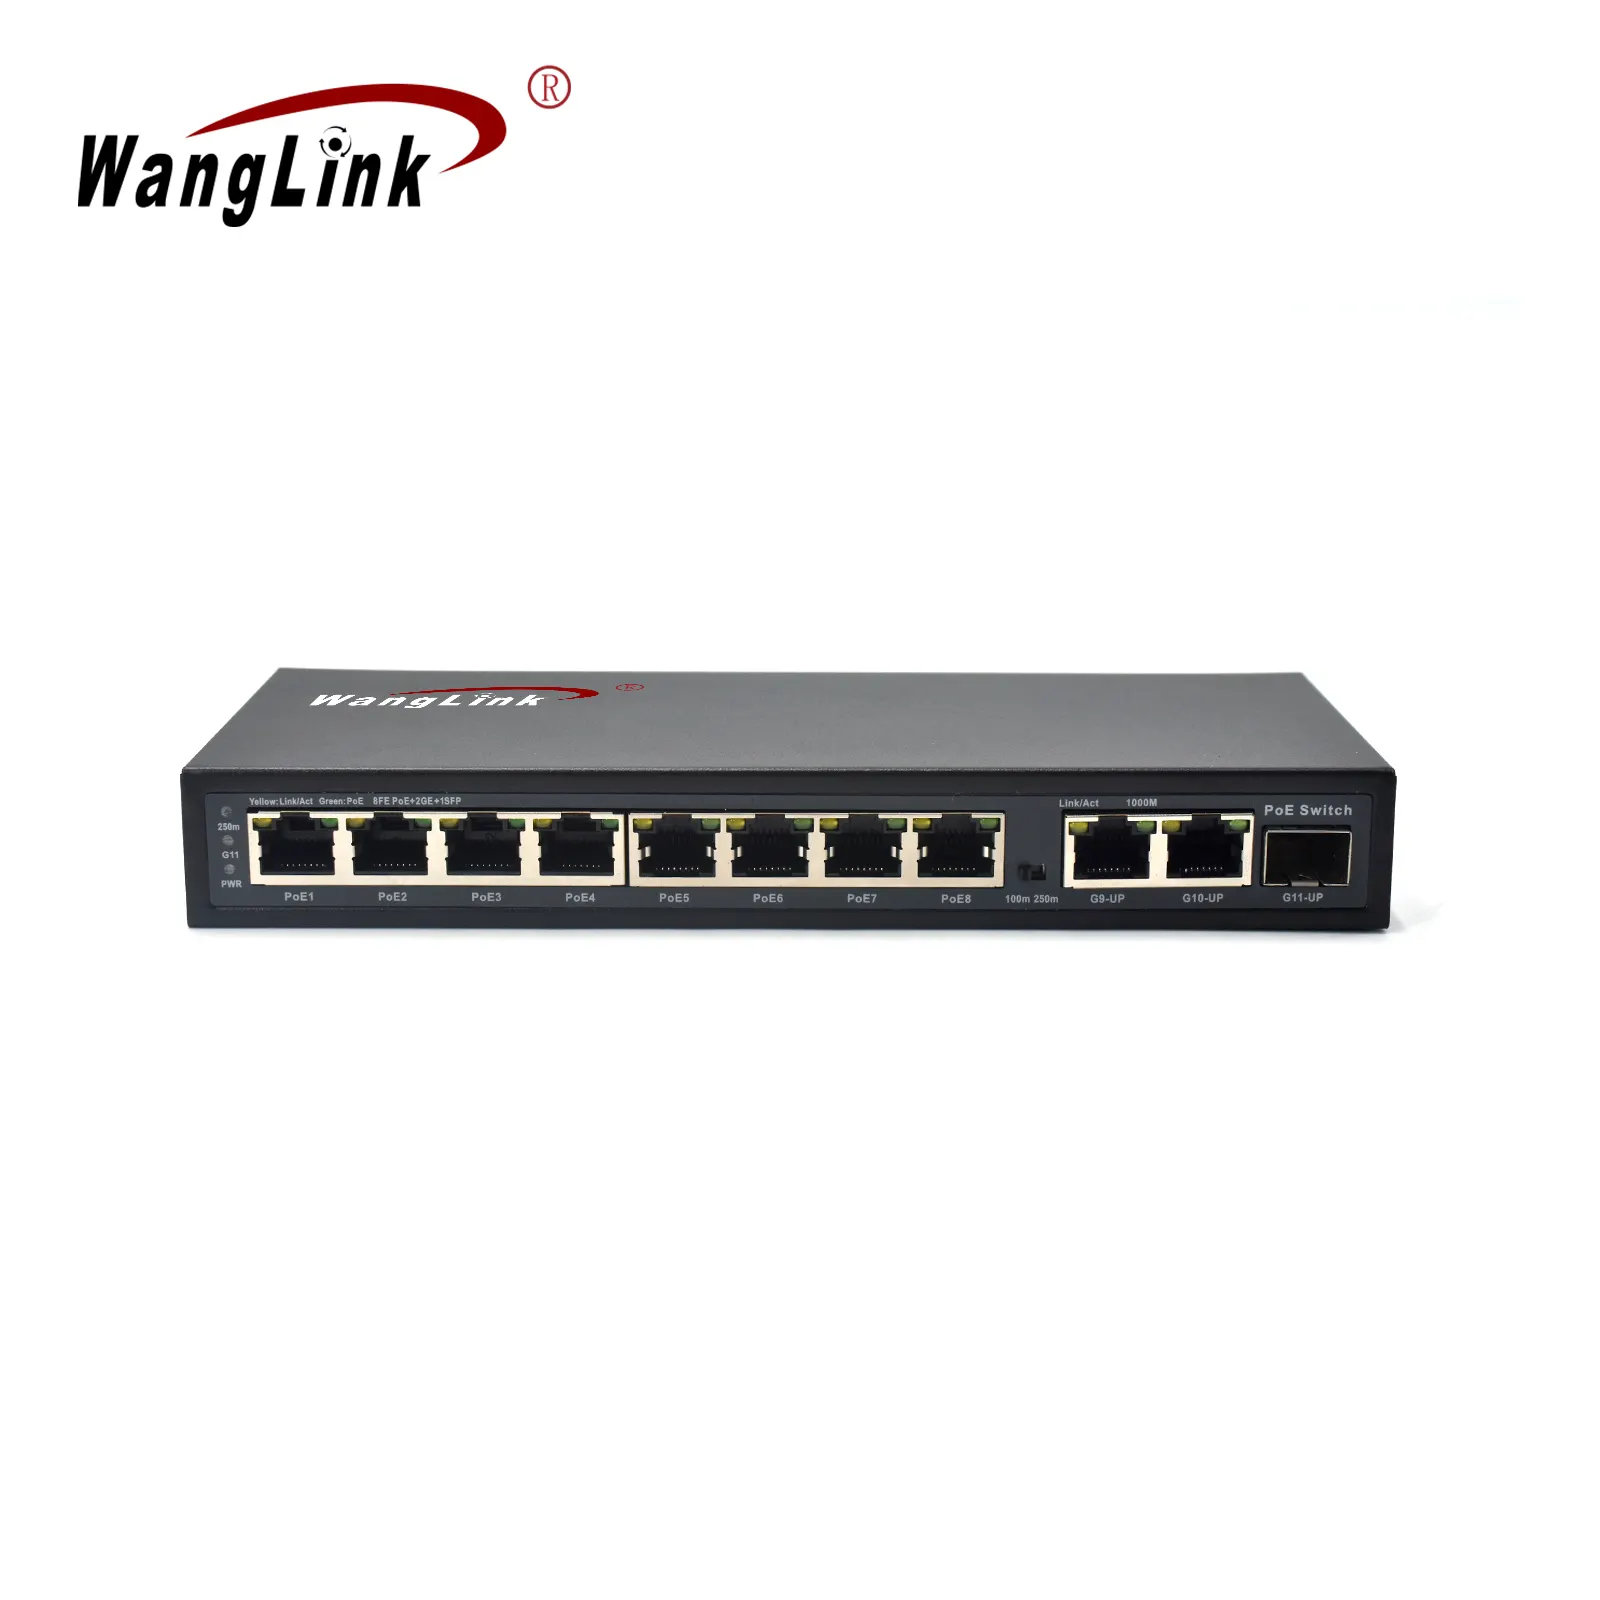 Wanglink 10/100Mbps 8 Cổng PoE Chuyển Đổi 2 Gigabit Cổng Uplink Với 1 SFP Cổng Hỗ Trợ Điện Bên Ngoài Ethernet PoE Chuyển Đổi